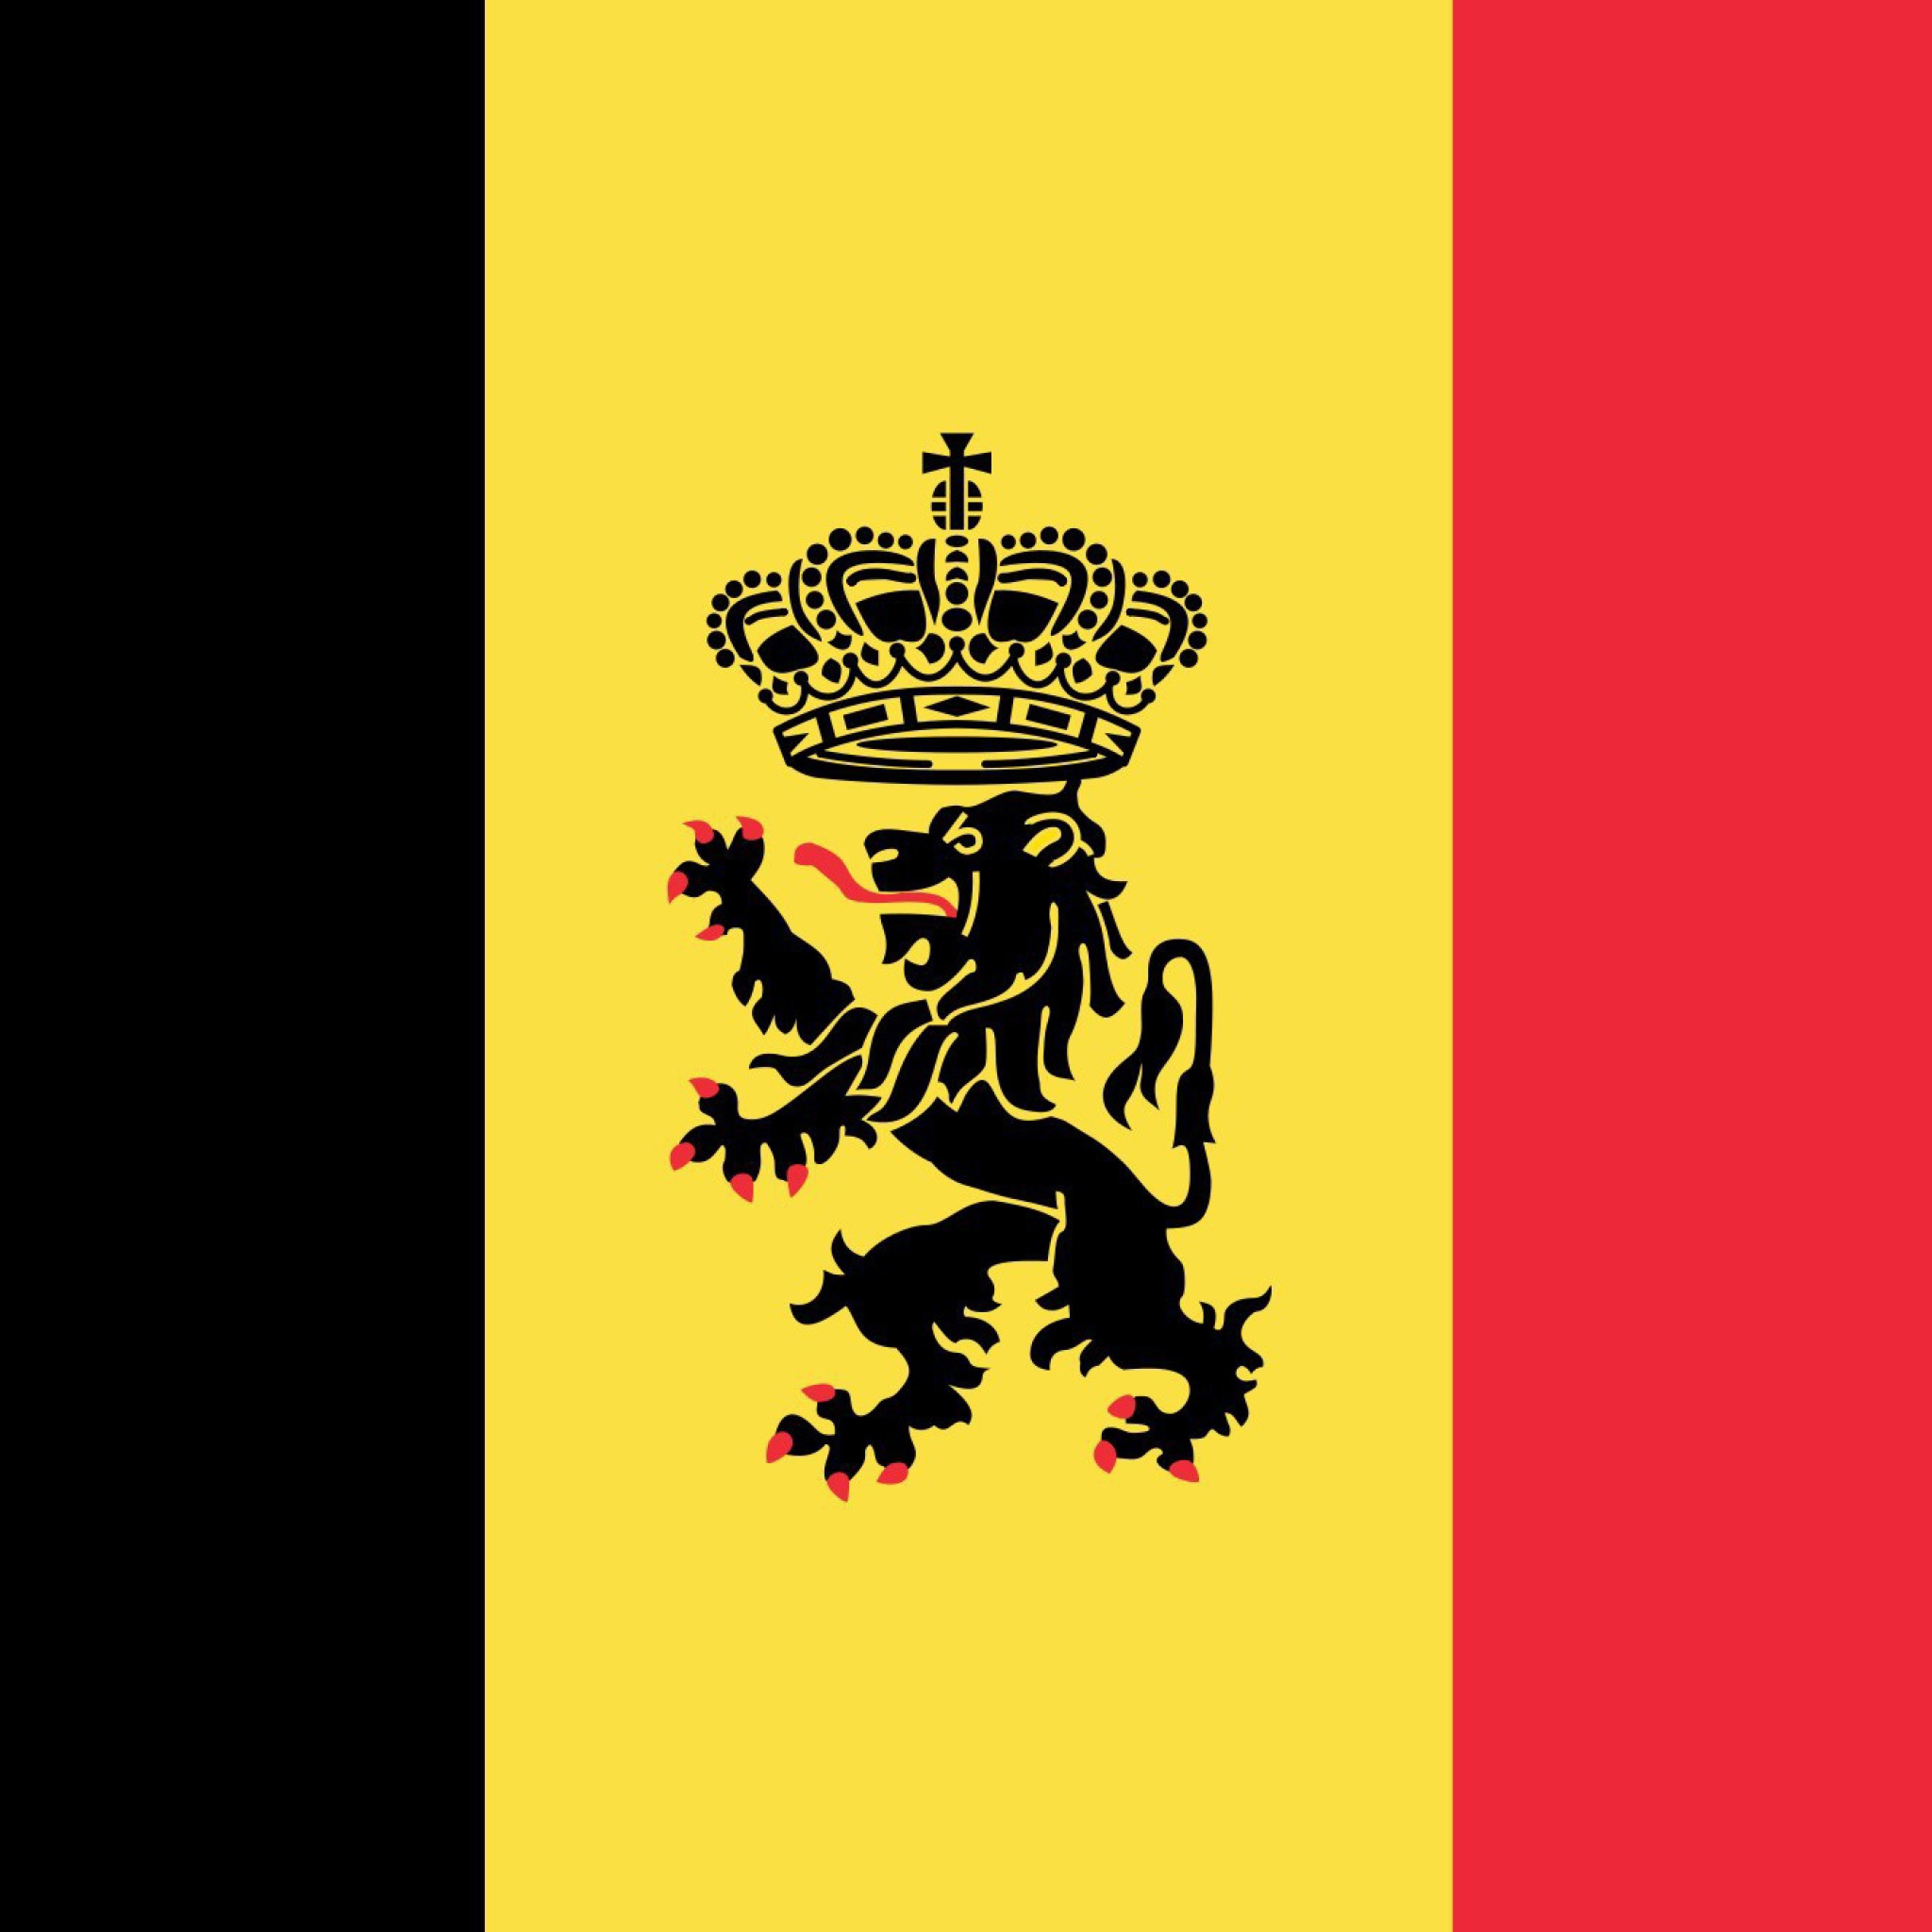 Belgium Flag and Gerb screenshot #1 2048x2048